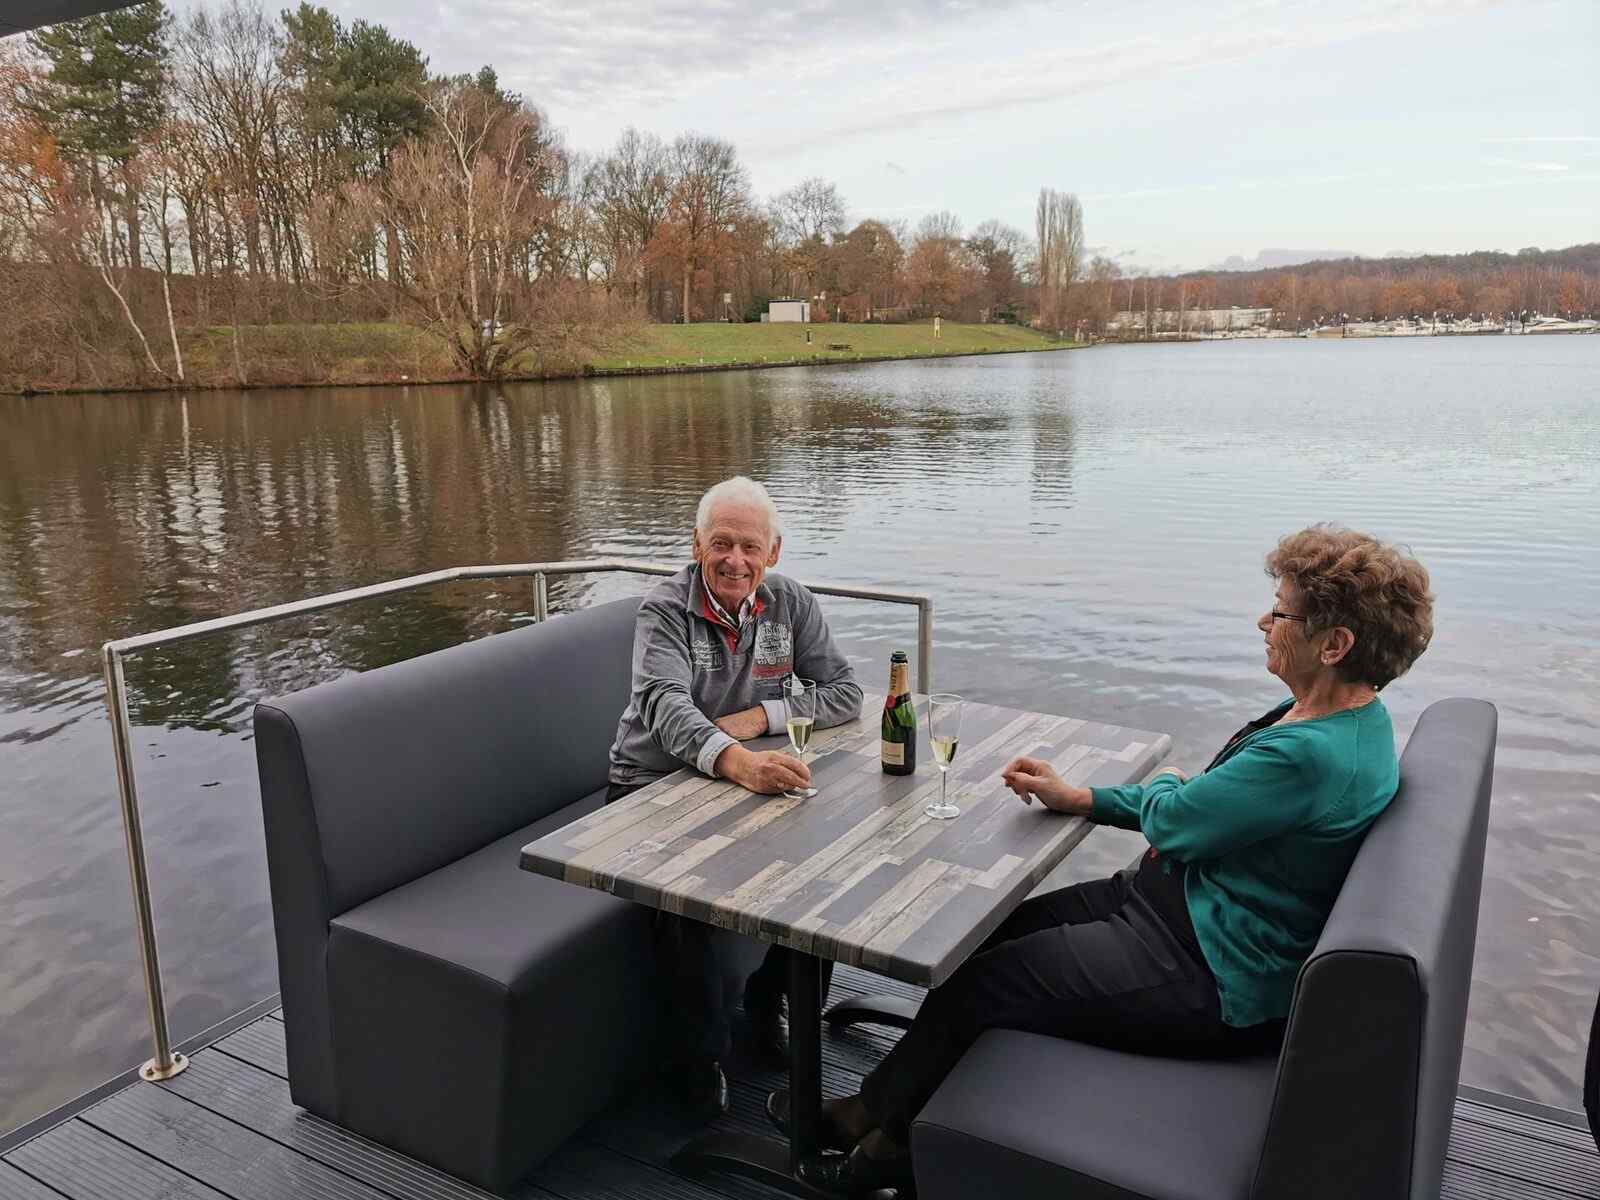 luxe-4-6-persoons-houseboat-aan-de-mookerplas-in-limburg-met-uitzicht-op-water-en-natuur